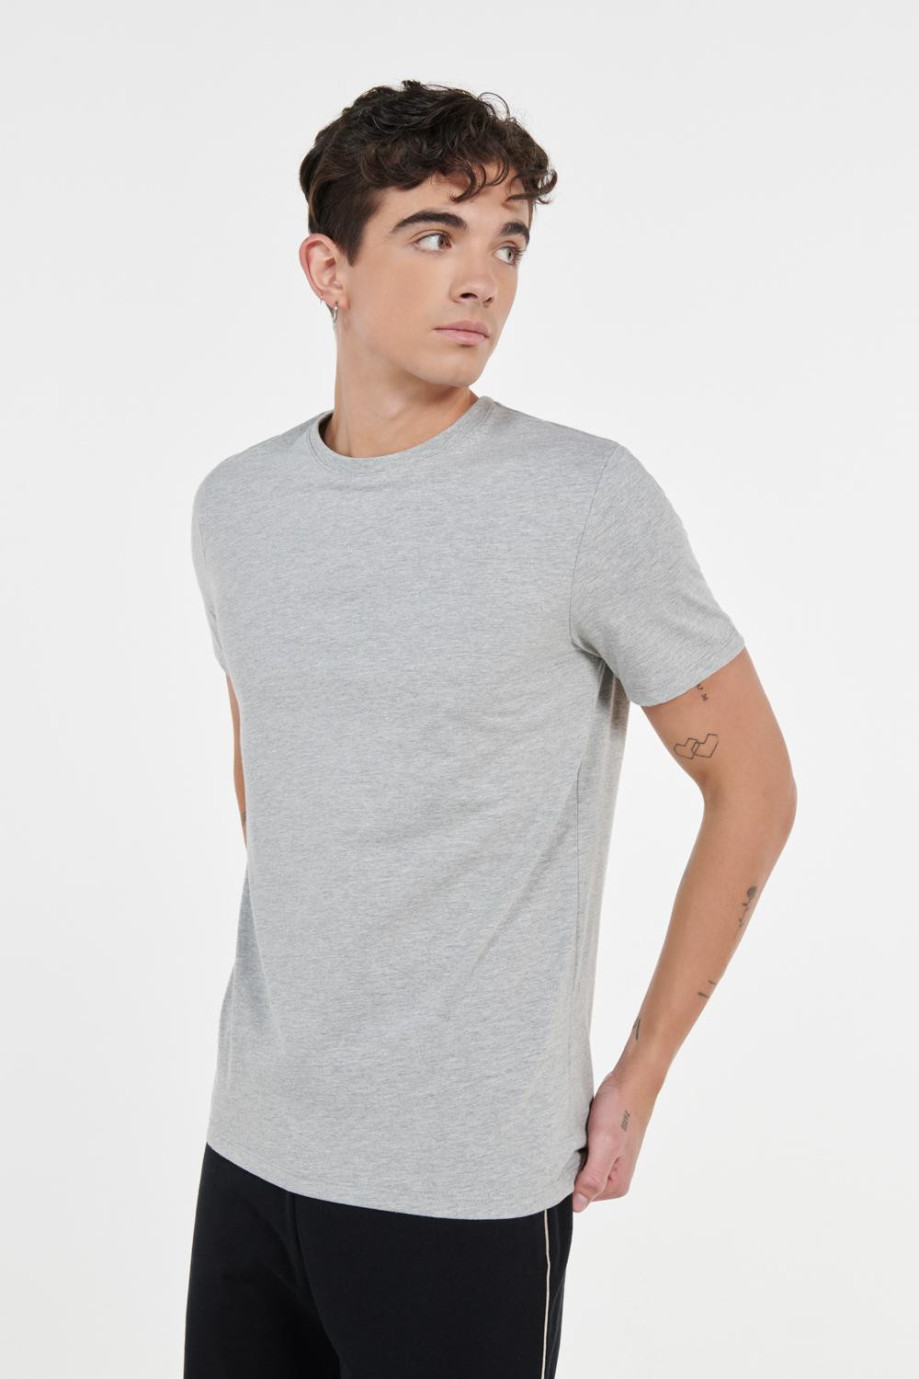 Camiseta gris clara con efecto jaspe, cuello redondo y manga corta